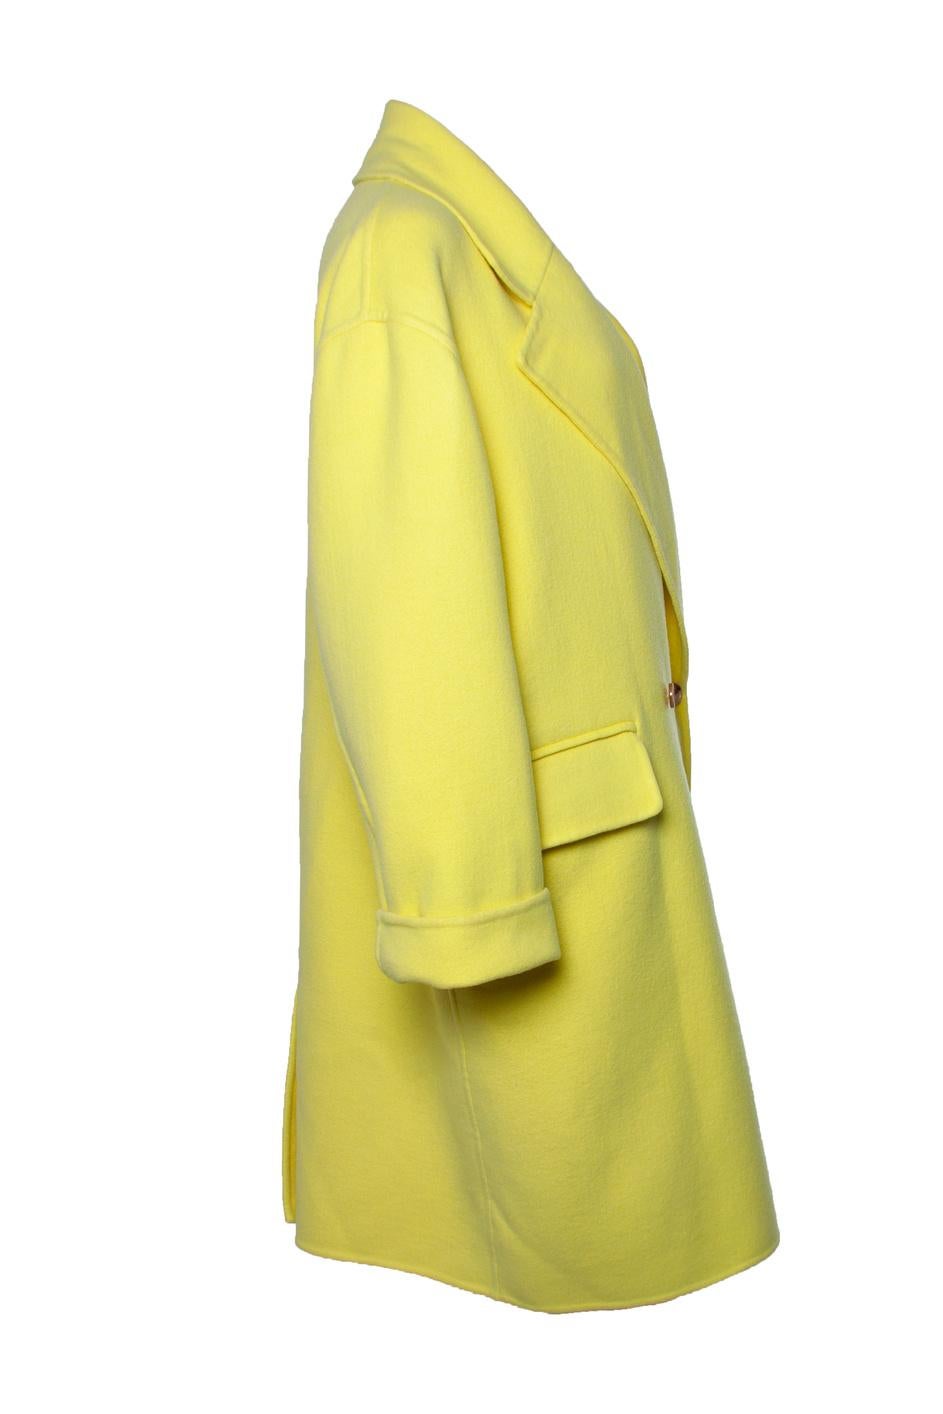 Bottega Veneta, Kiwi cashmere coat. The item is in very good condition.

• CONDITION: very good condition 

• SIZE: IT40 - XS

• MEASUREMENTS: length 100 cm, width 60 cm, waist 60 cm, shoulder width 58 cm, sleeve length 59 cm

• MATERIAL: 100%